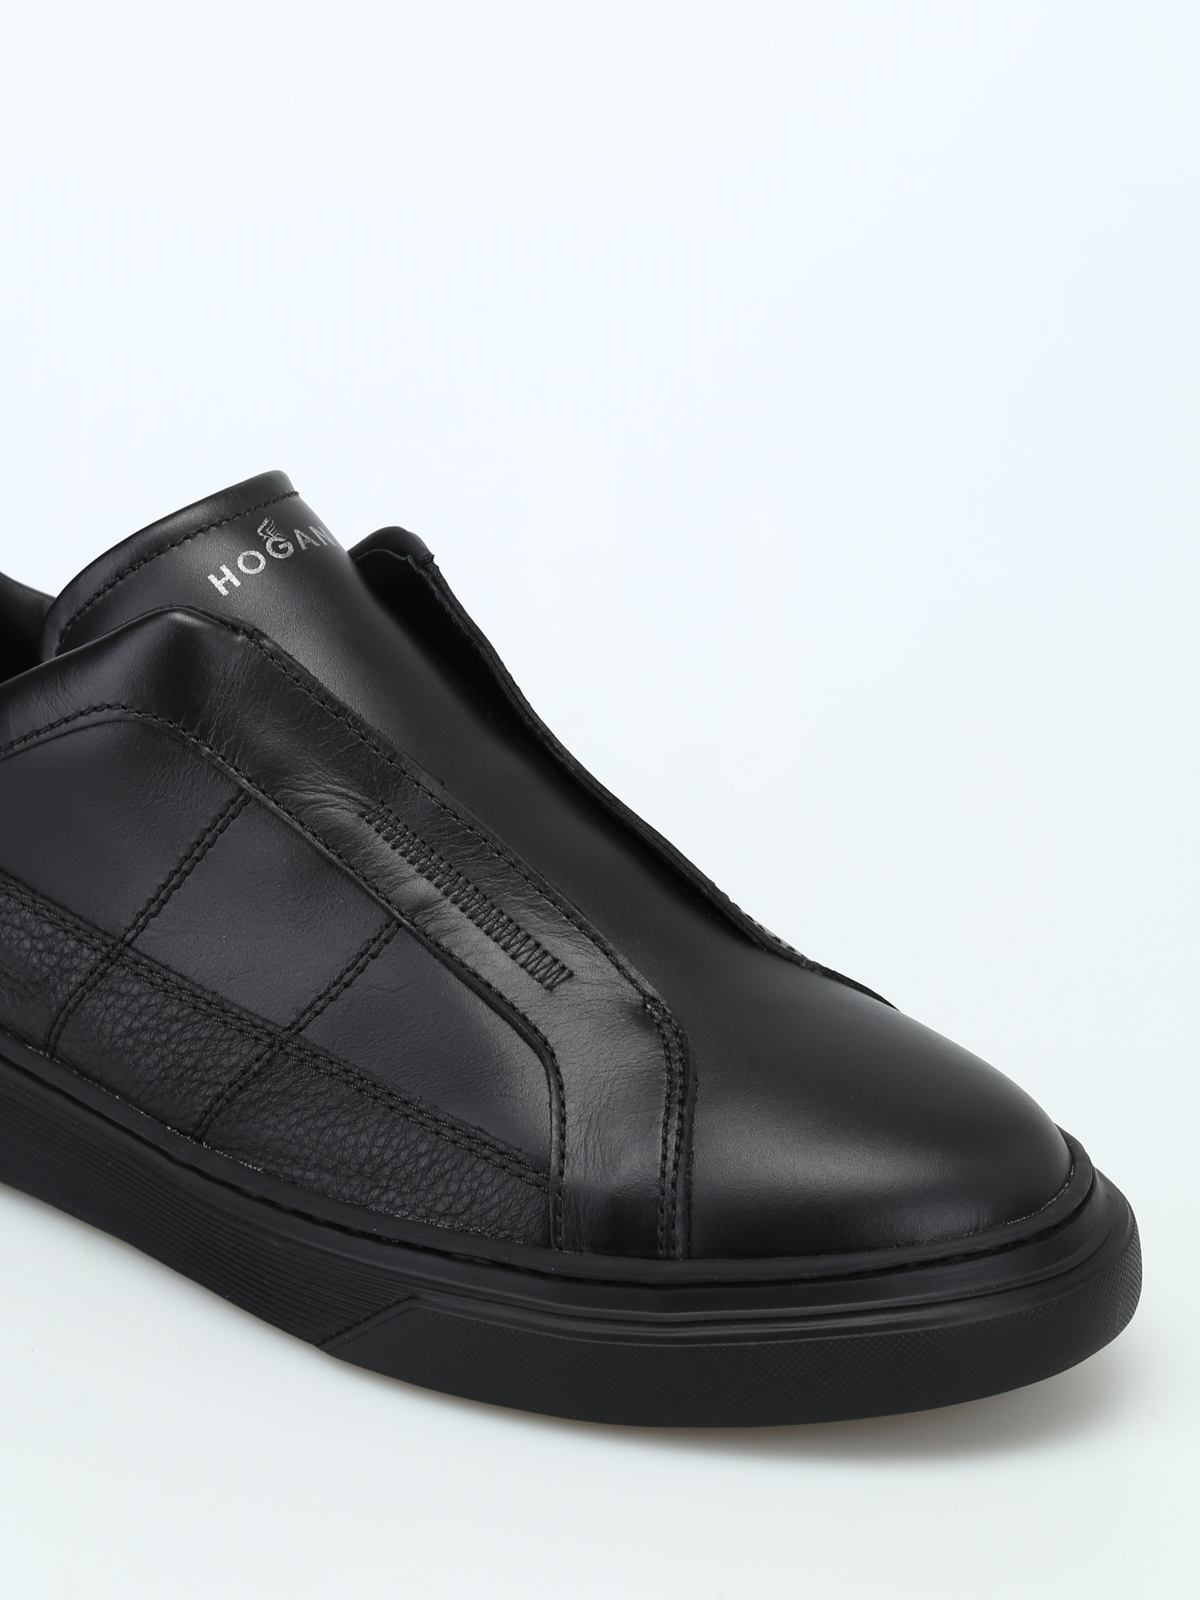 Hogan - Sneaker in pelle nera senza lacci - sneakers - HXM3650AX00IJY0XCR